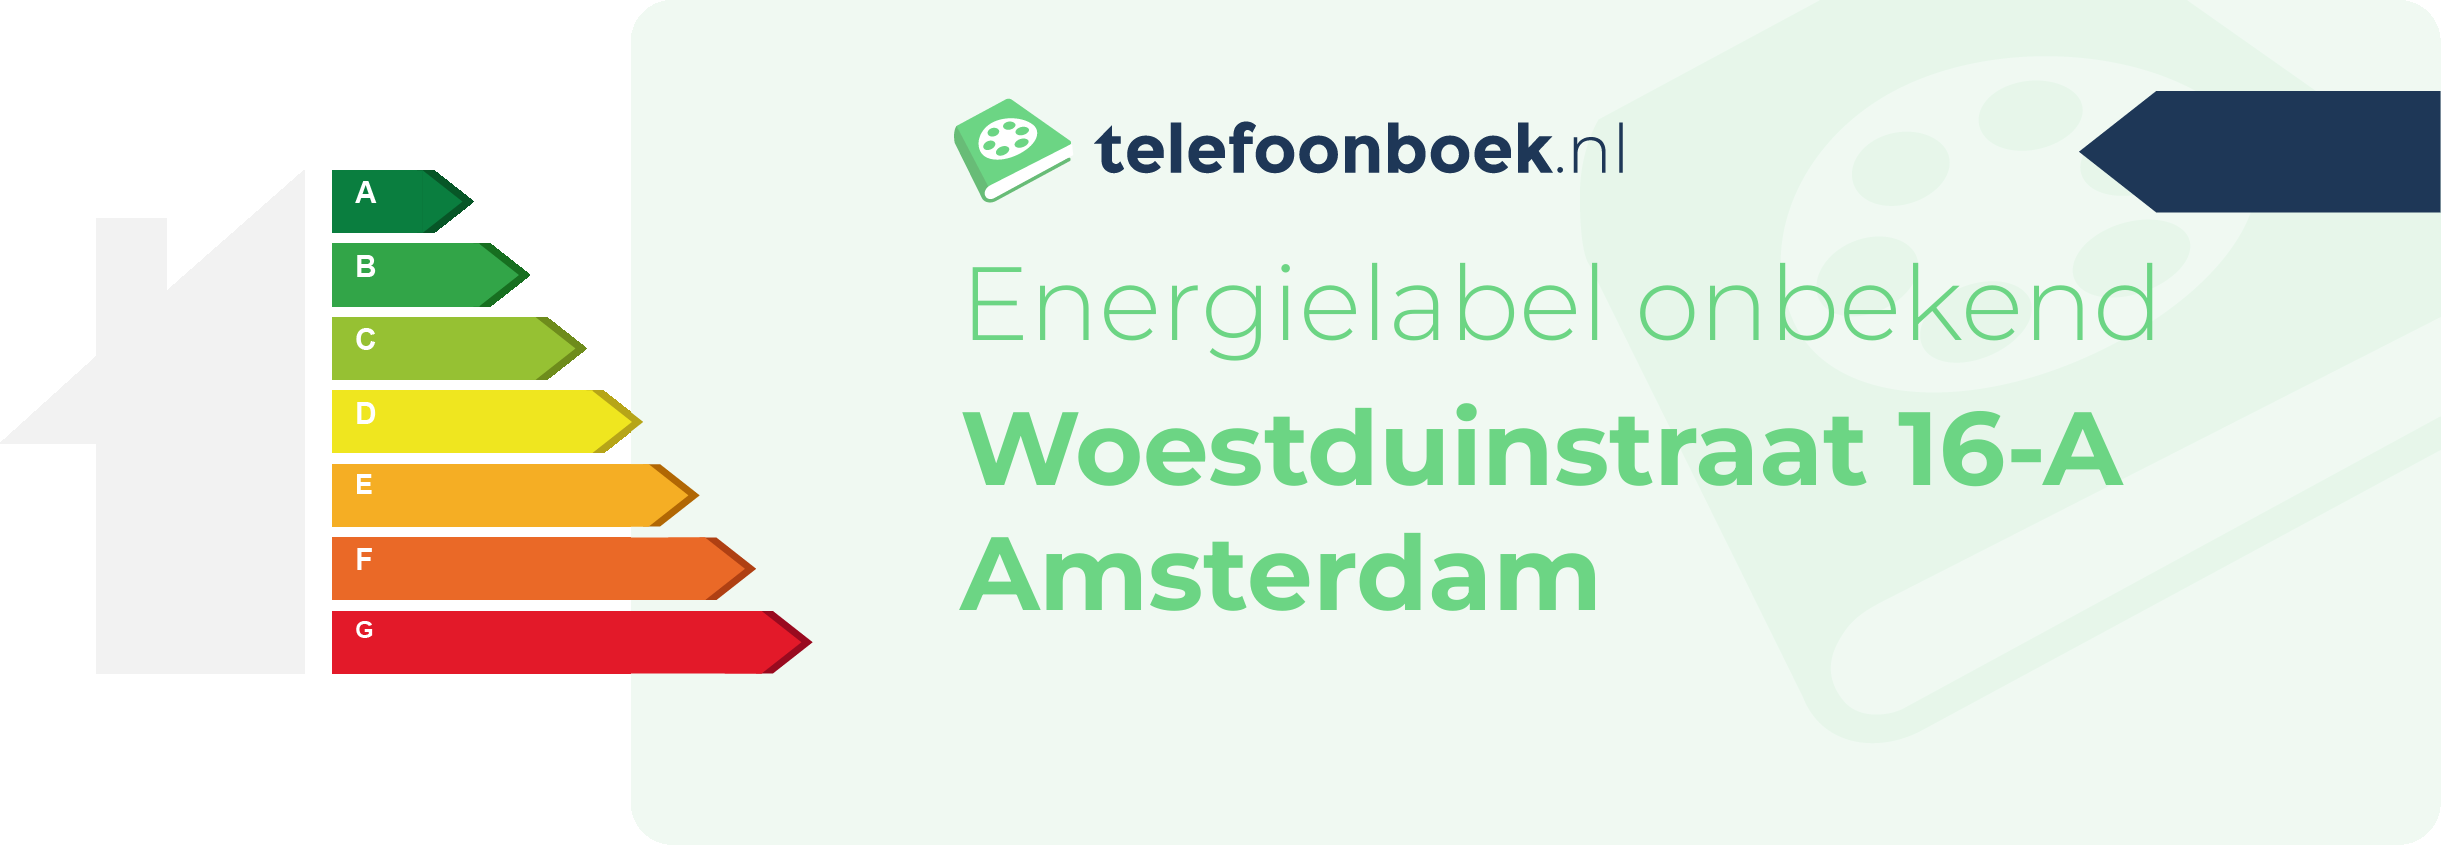 Energielabel Woestduinstraat 16-A Amsterdam